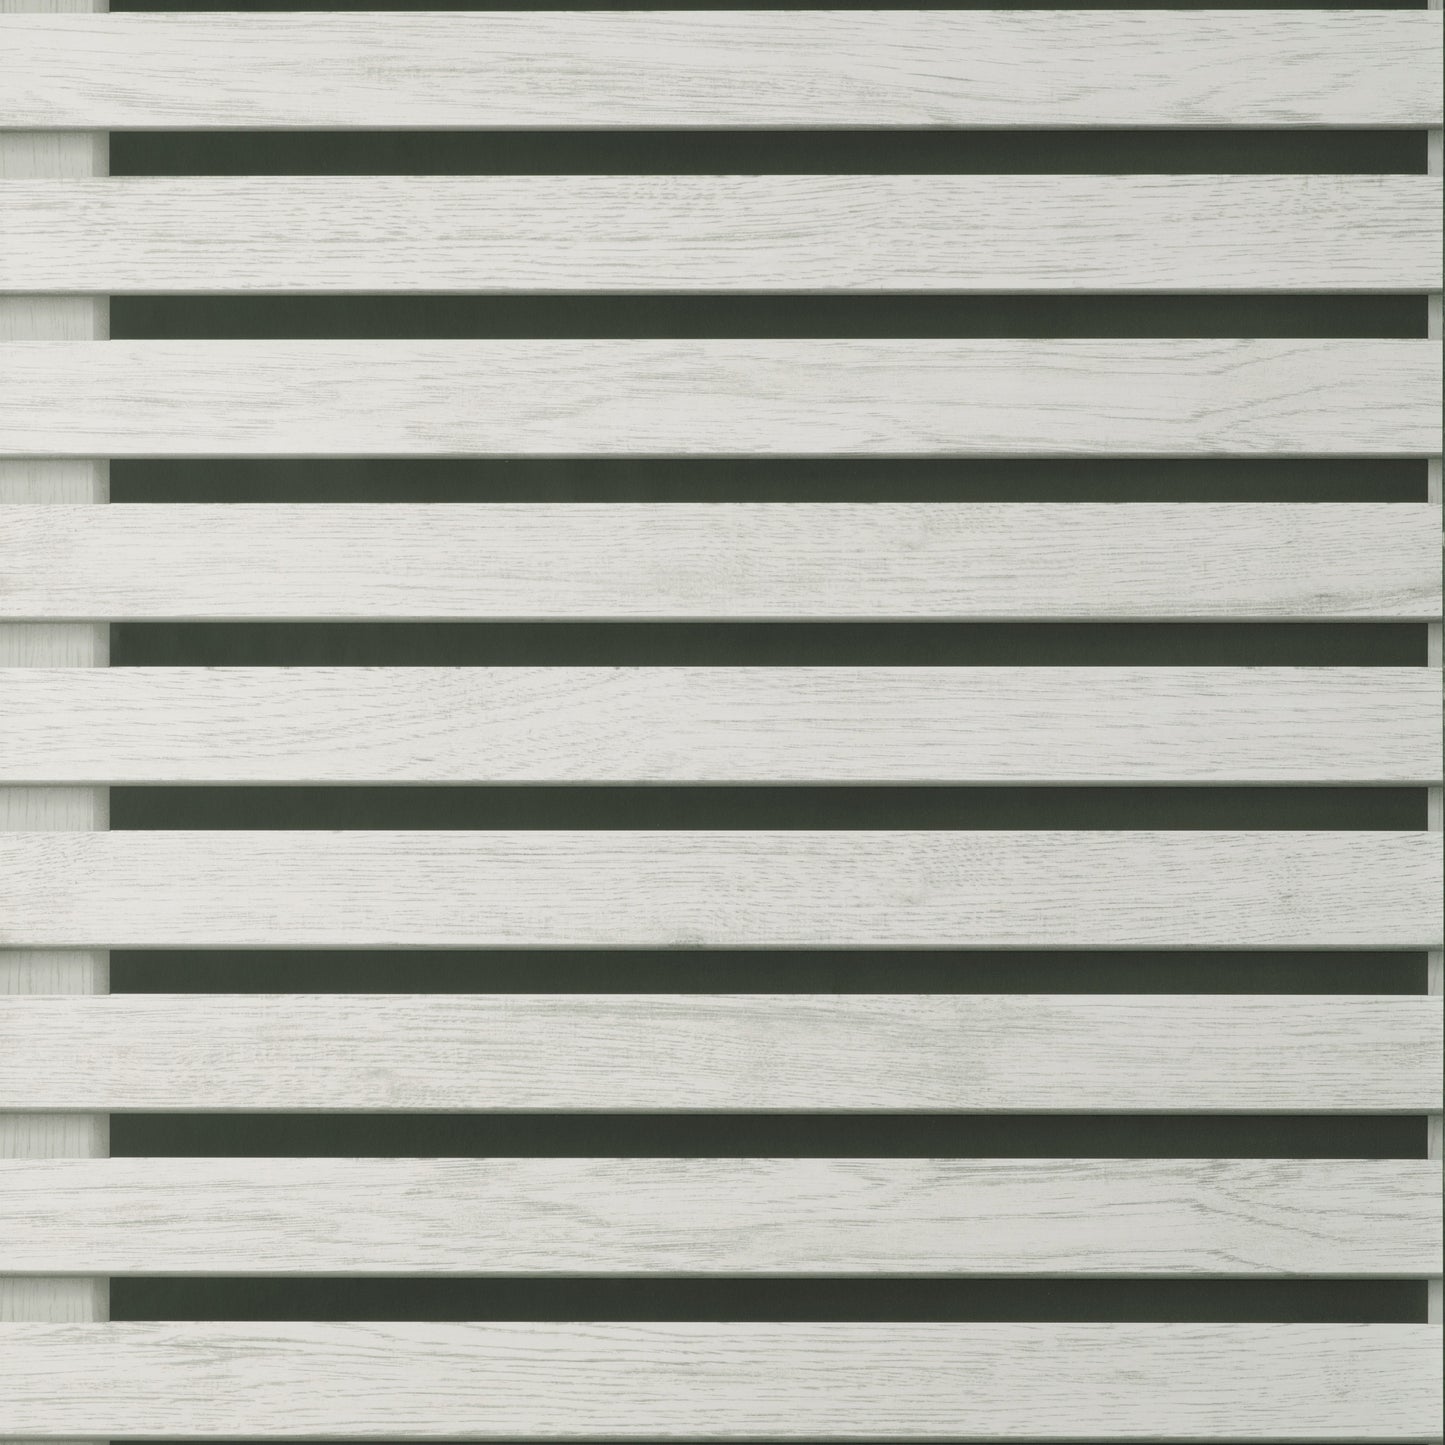 Fine Decor Wood Slats Black/Grey Wallpaper (FD43219)